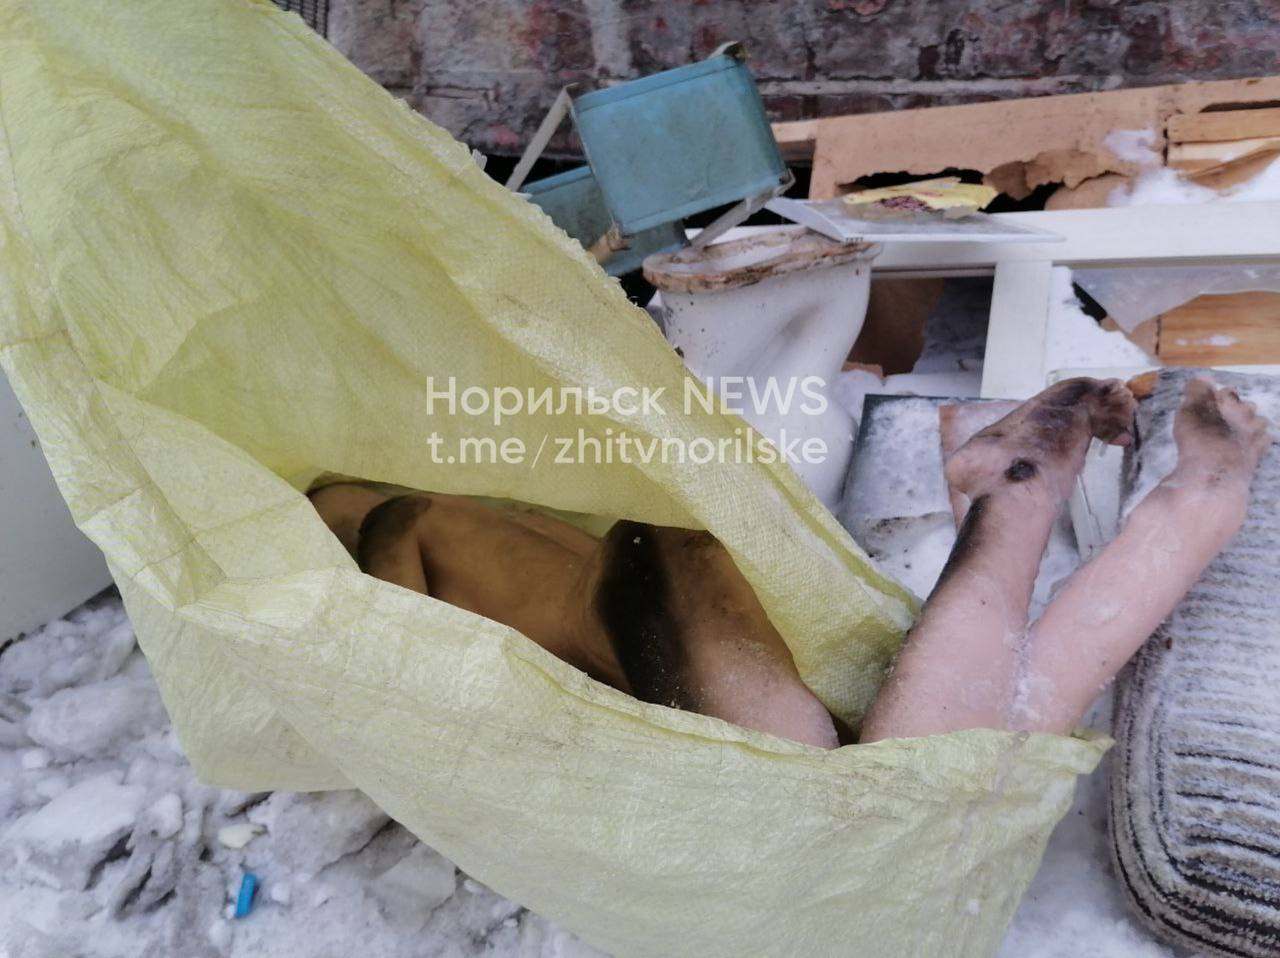 Житель Норильска испугался женских ног, торчащих из пакета на мусорке. Но все не так страшно